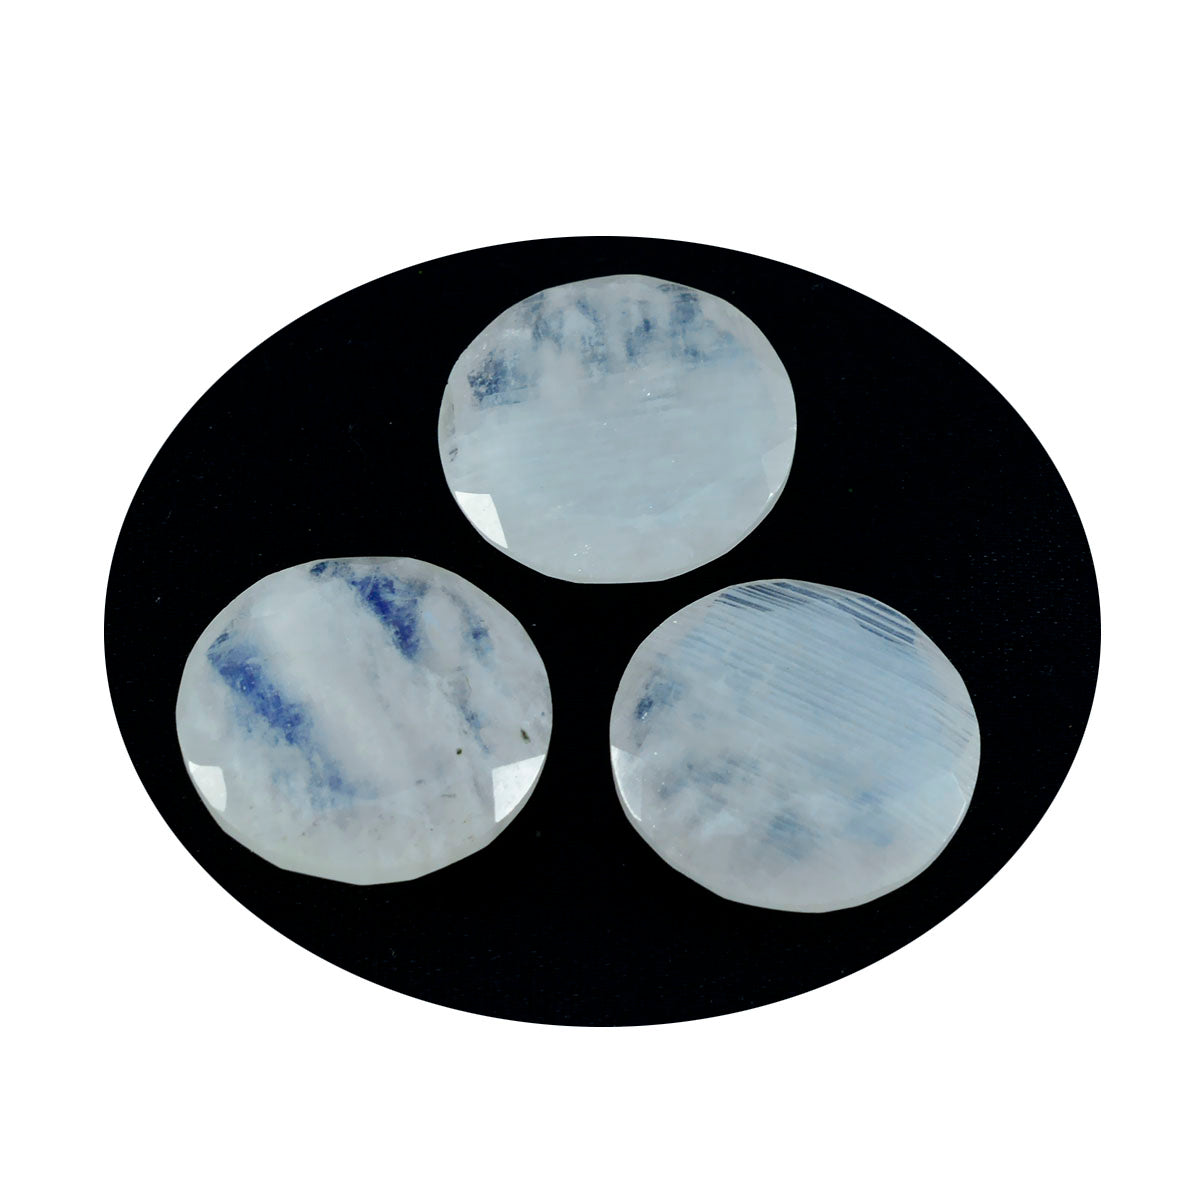 riyogems 1 шт., белый радужный лунный камень, ограненный 15x15 мм, круглая форма, качество AAA, свободный драгоценный камень